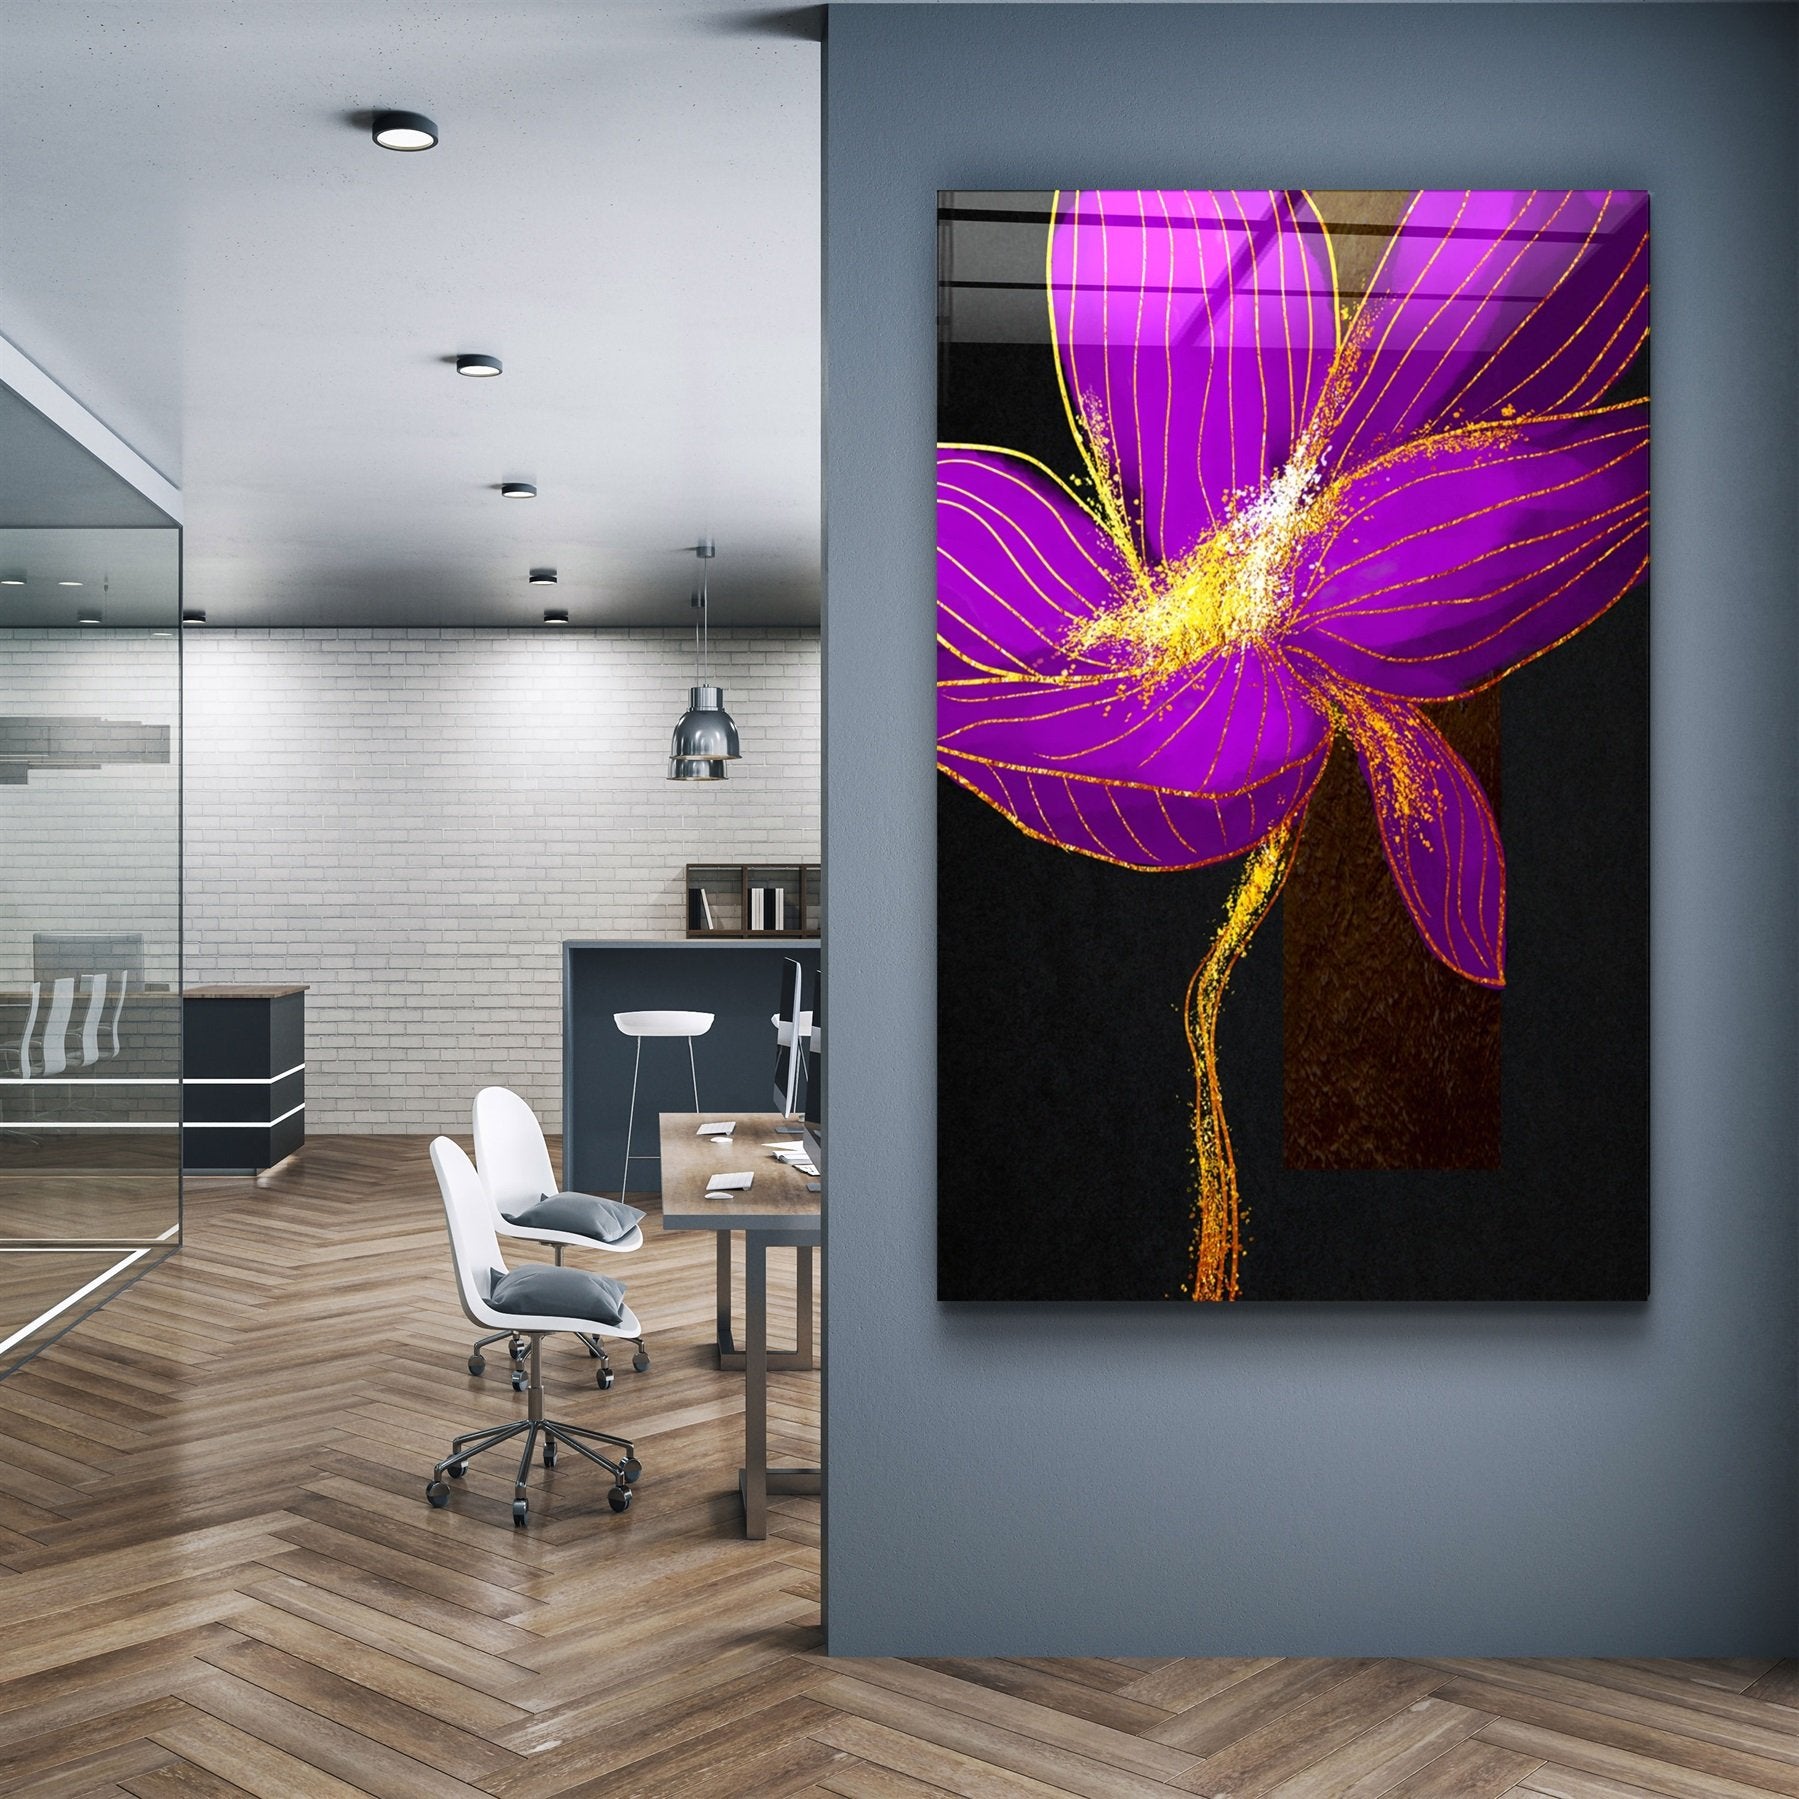 ・"Purple Flower"・Glass Wall Art